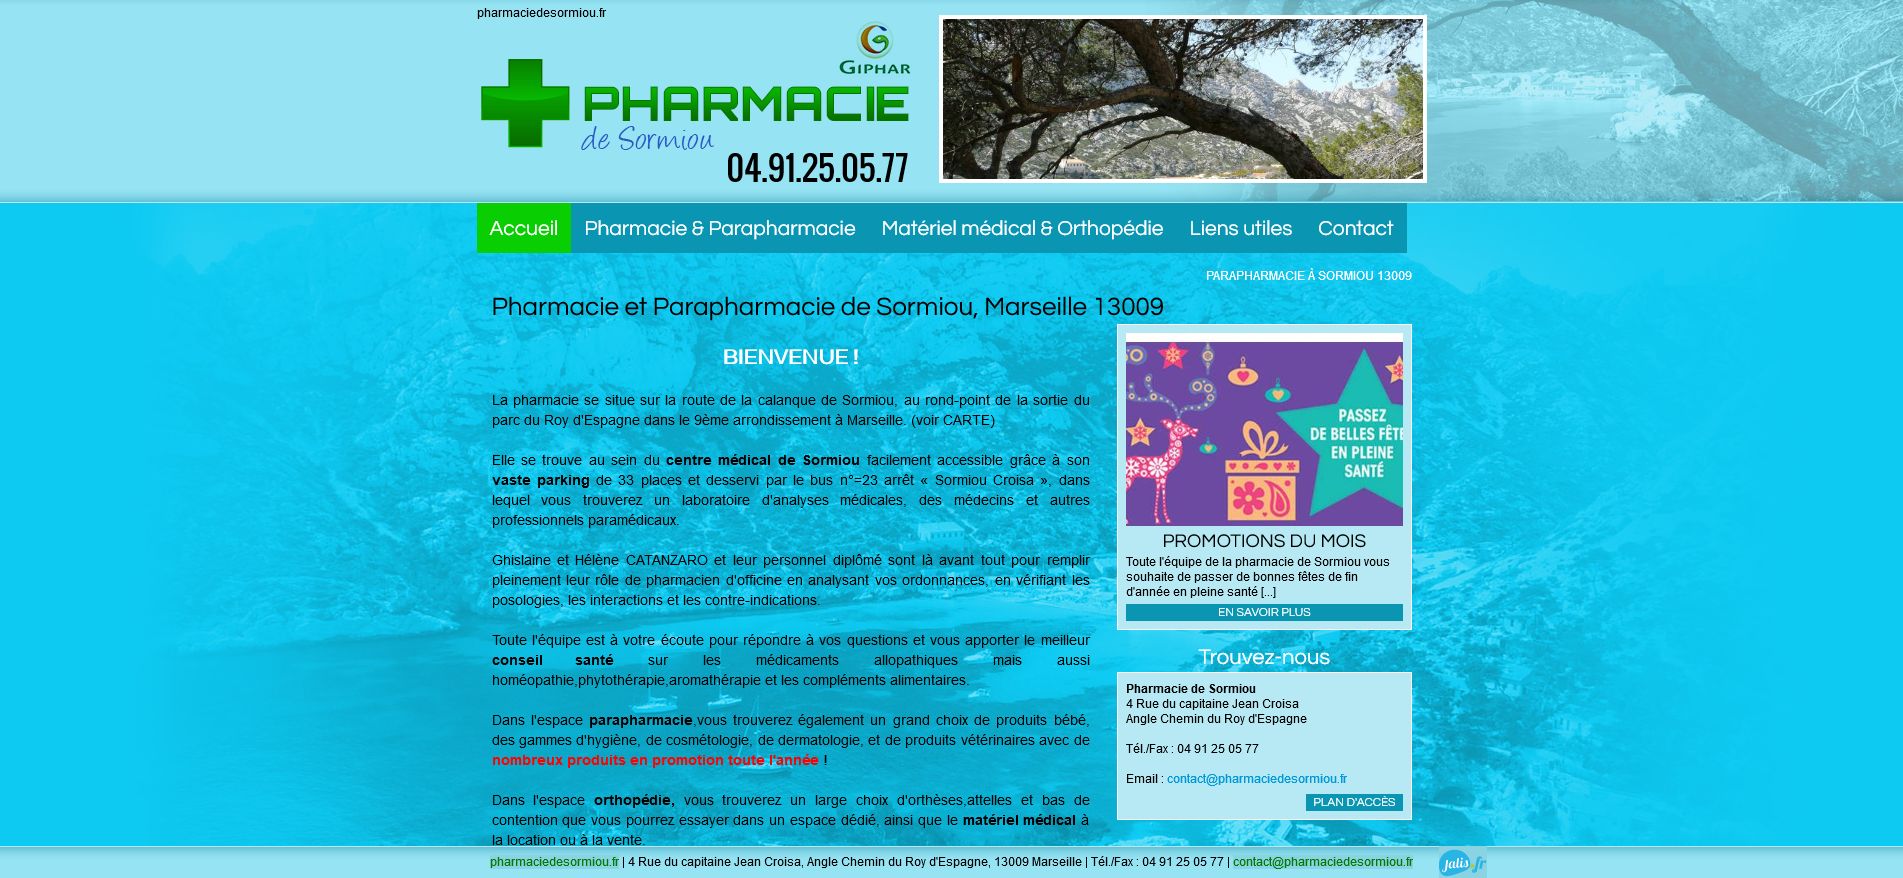 Pharmacie de Sormiou – Parapharmacie et pharmacie dans le 9e à Marseille